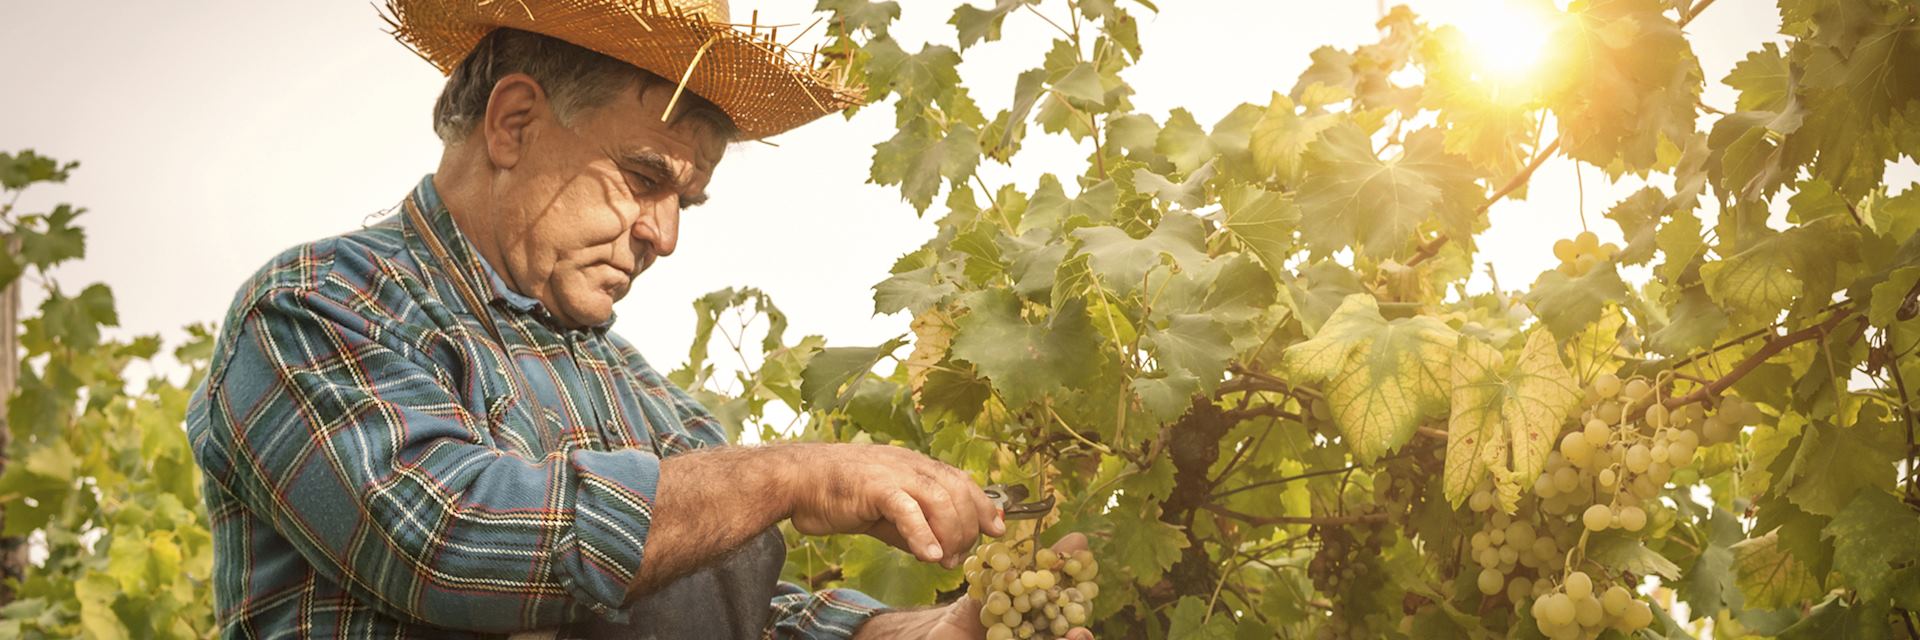 Farmer harvesting grapes, Tuscany, Italy